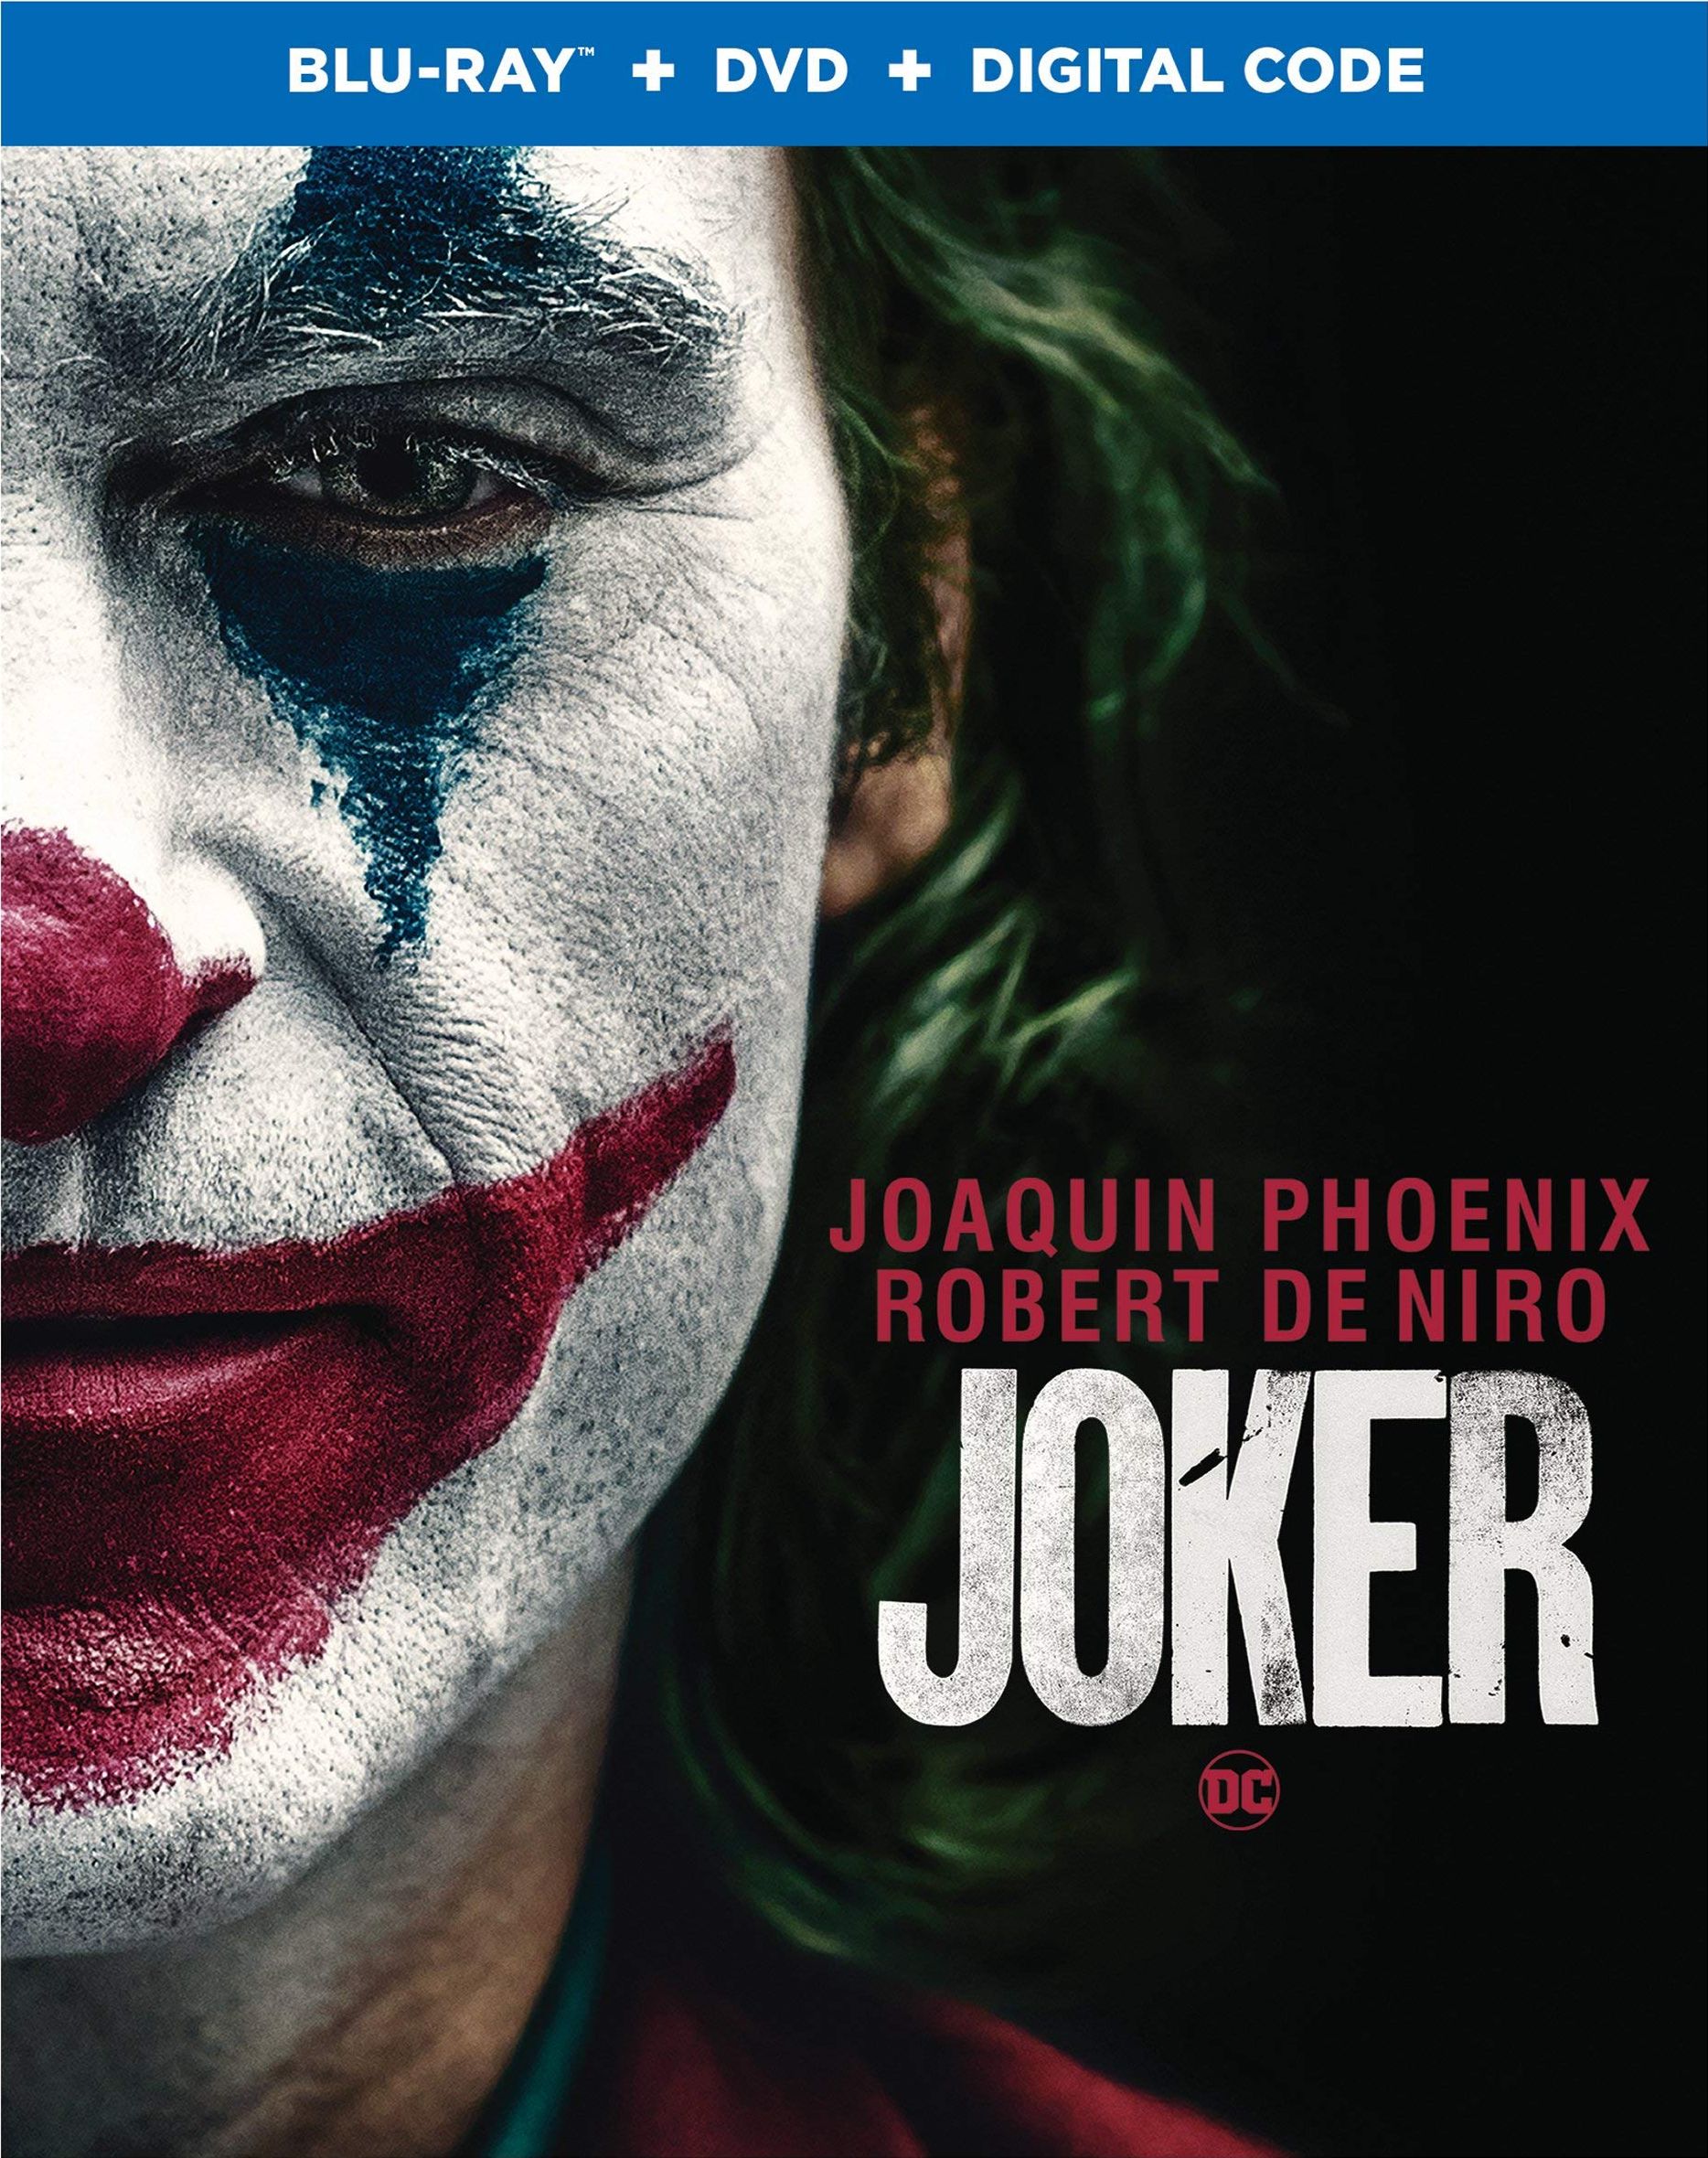 Joker Dvd Release Date January 7 2020